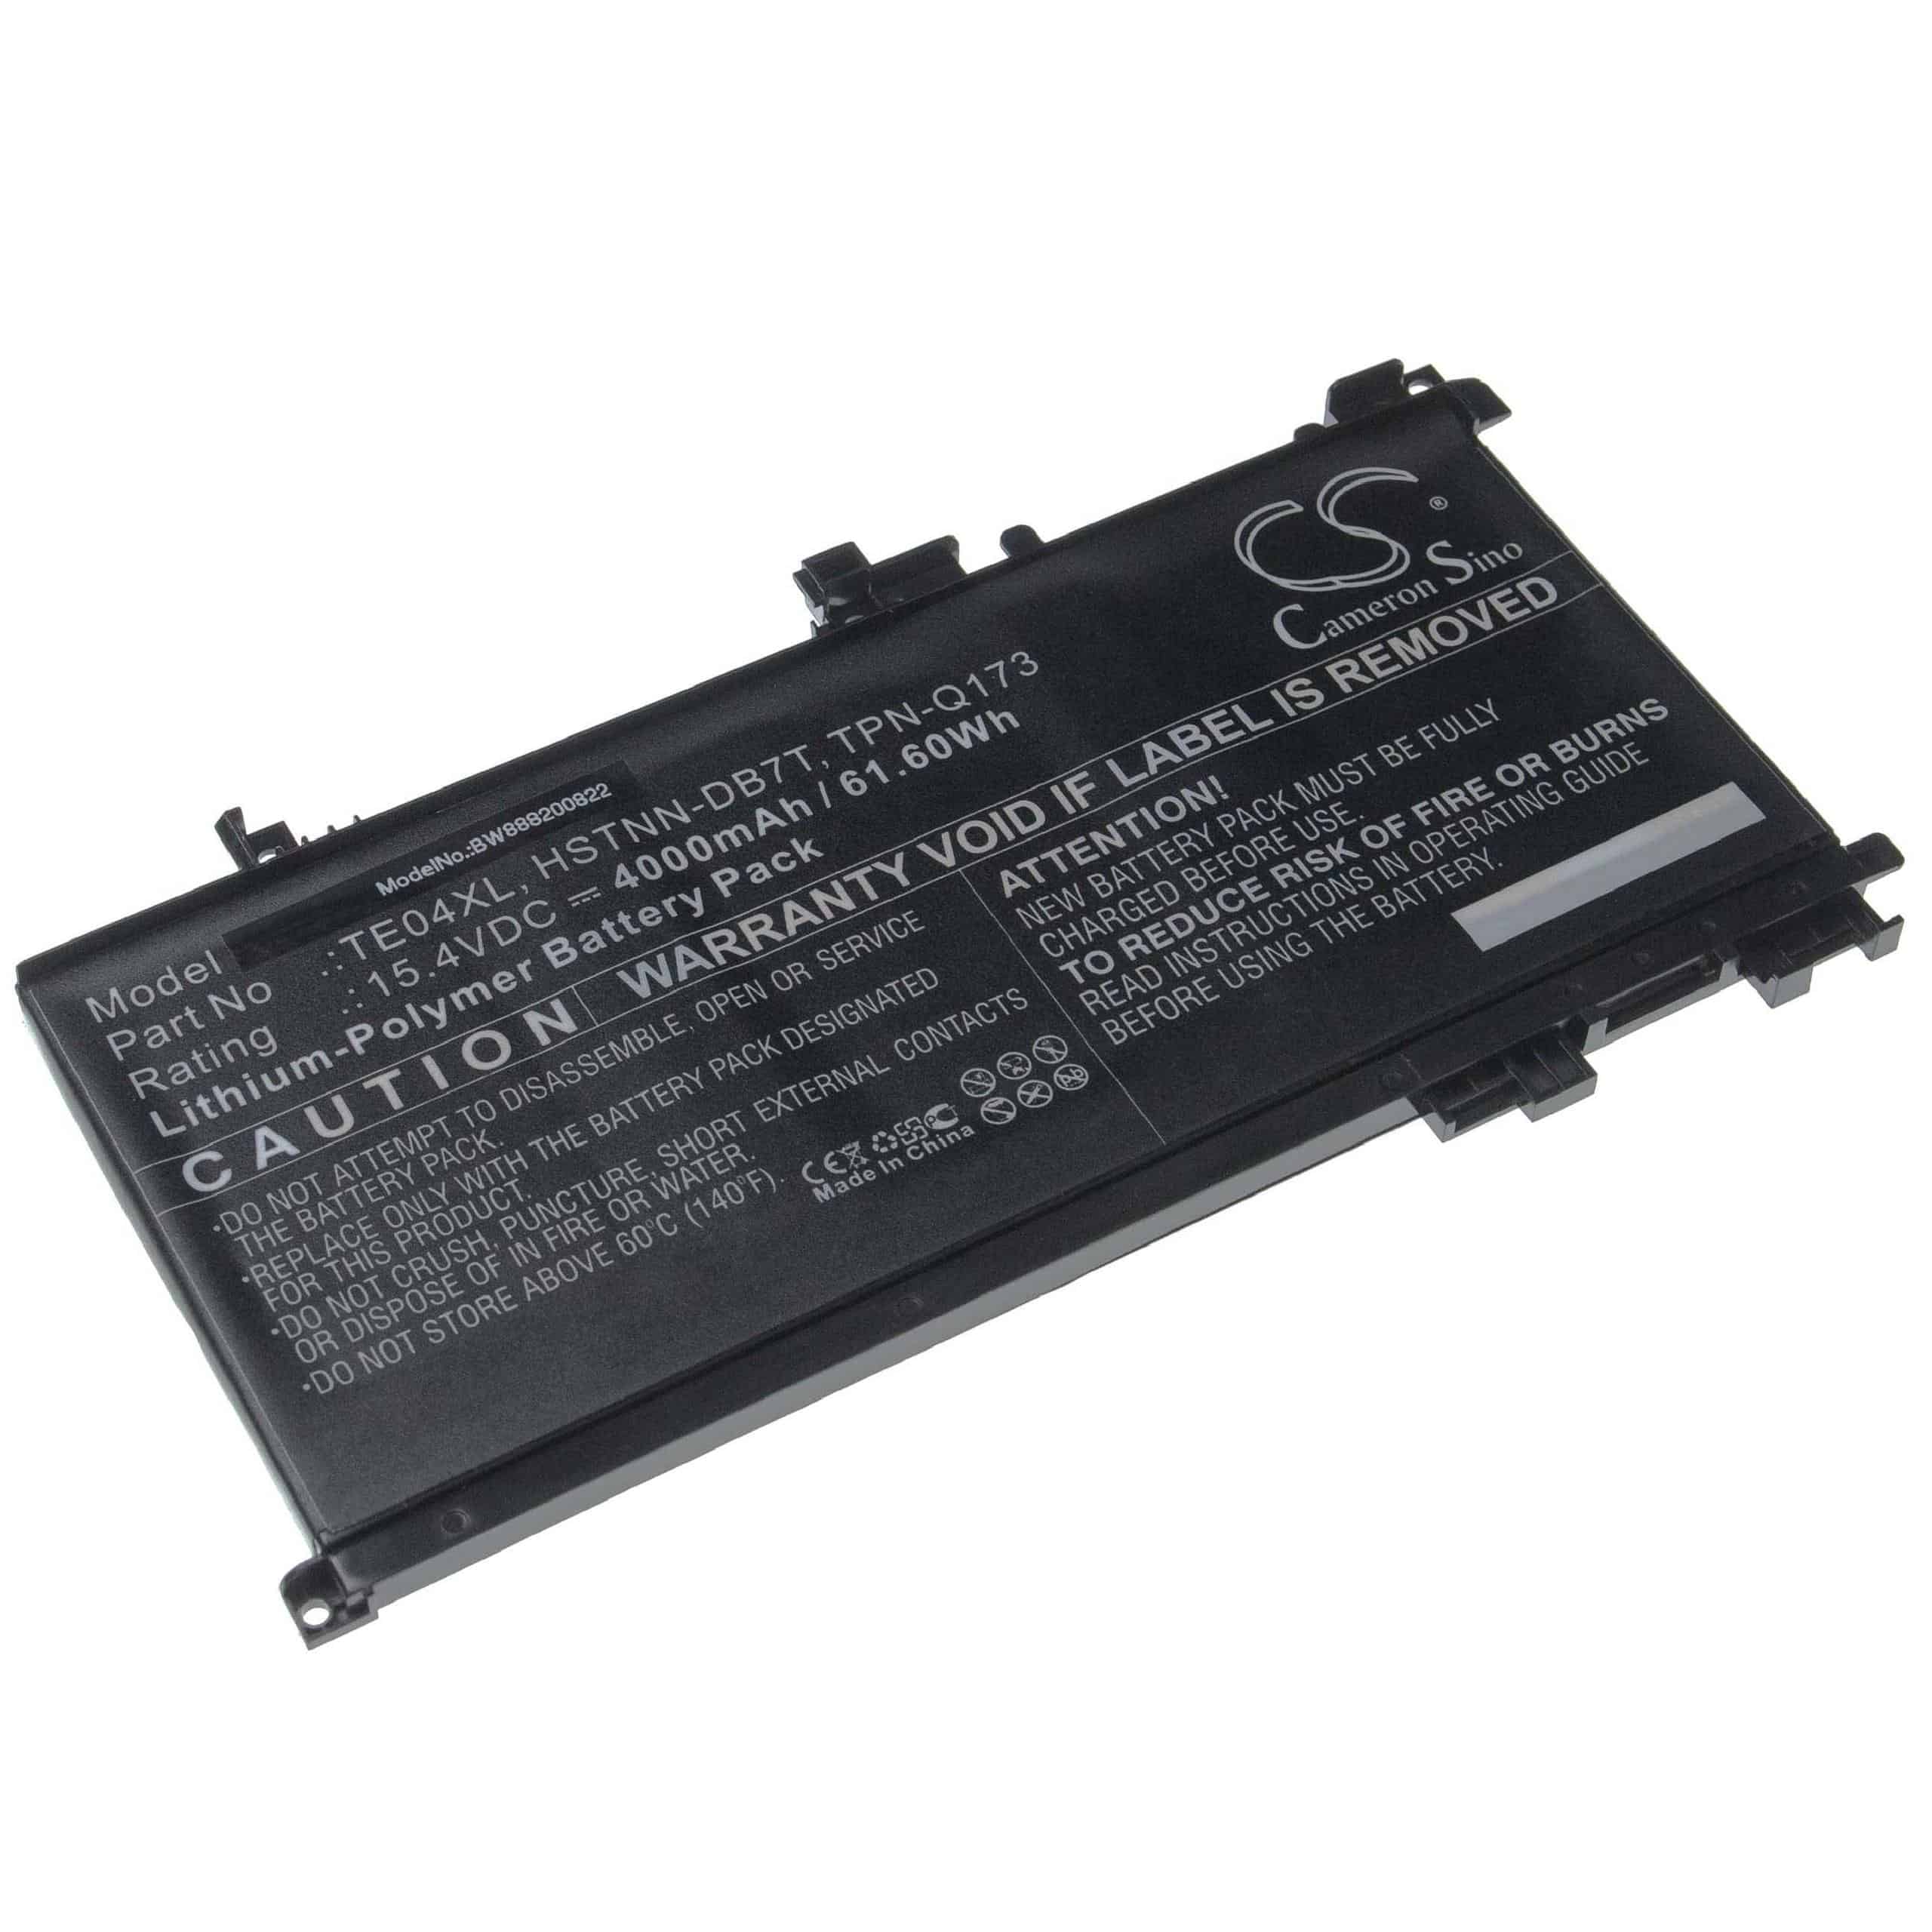 Batterie remplace HP 15-AX033TX, 905175-271 pour ordinateur portable - 4000mAh 15,4V Li-polymère, noir